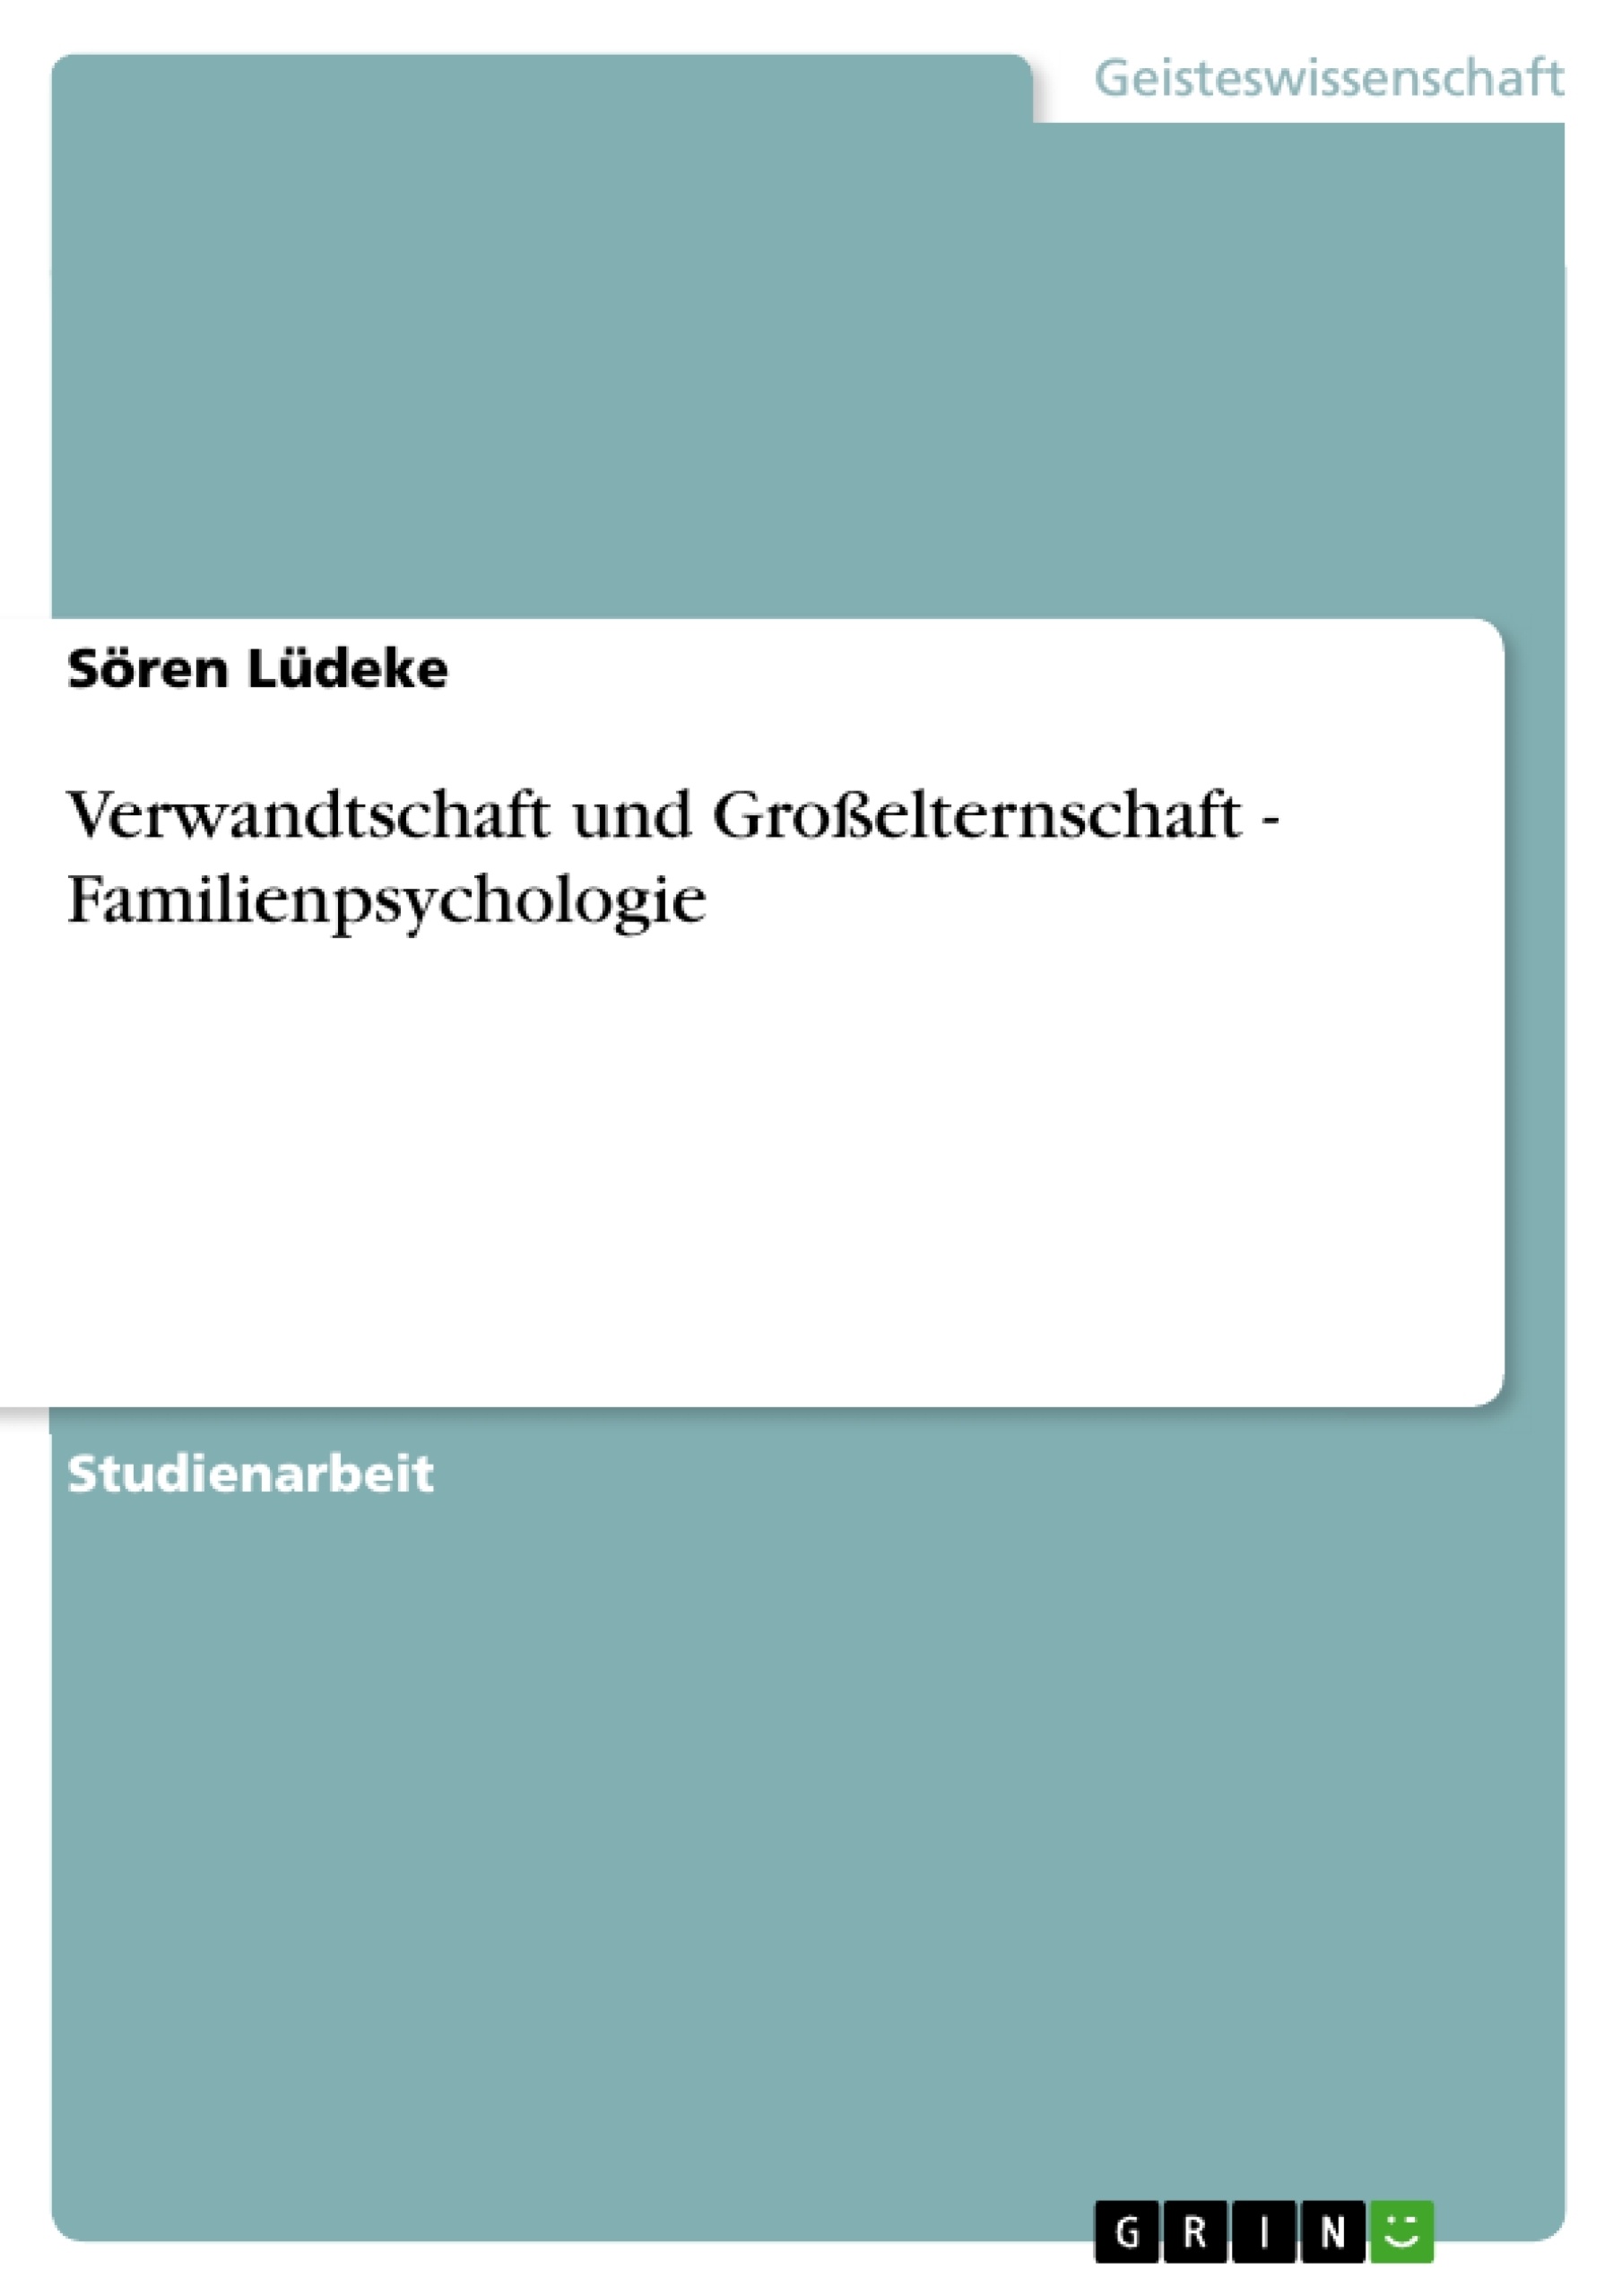 Título: Verwandtschaft und Großelternschaft - Familienpsychologie